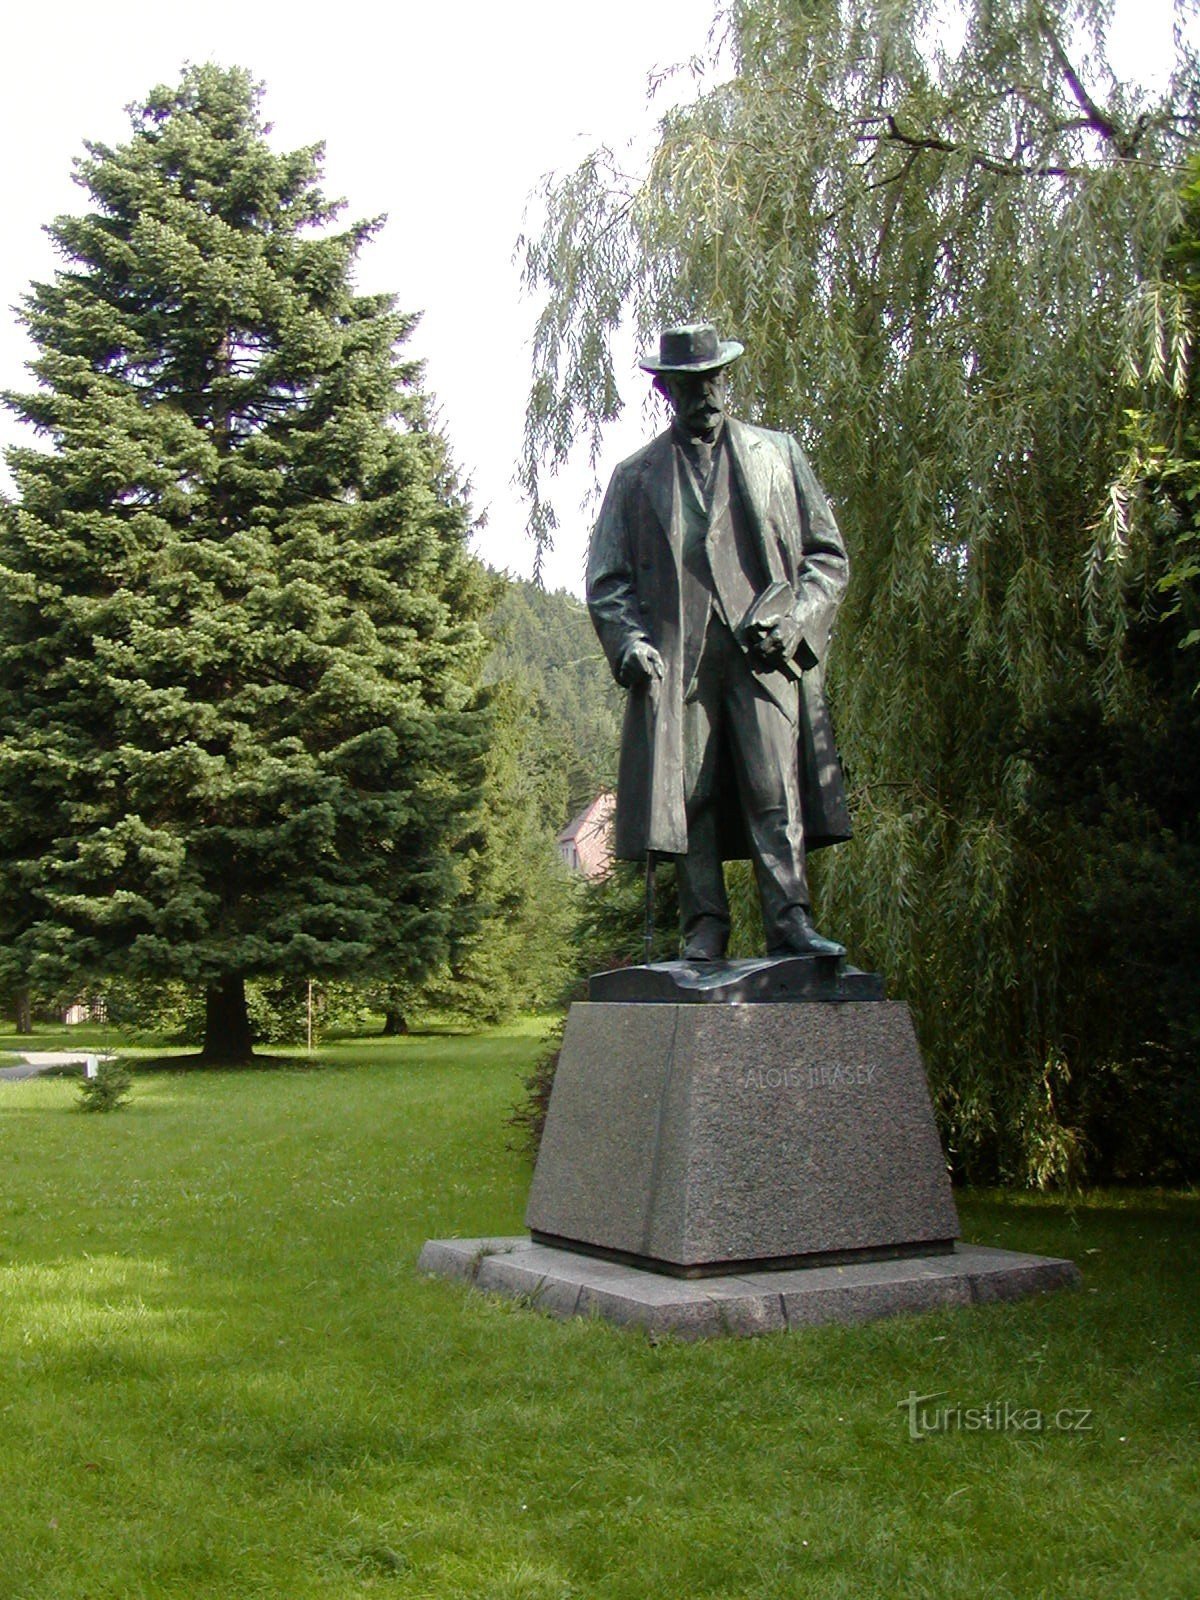 Hronov - πάρκο, Jiráskovy sady